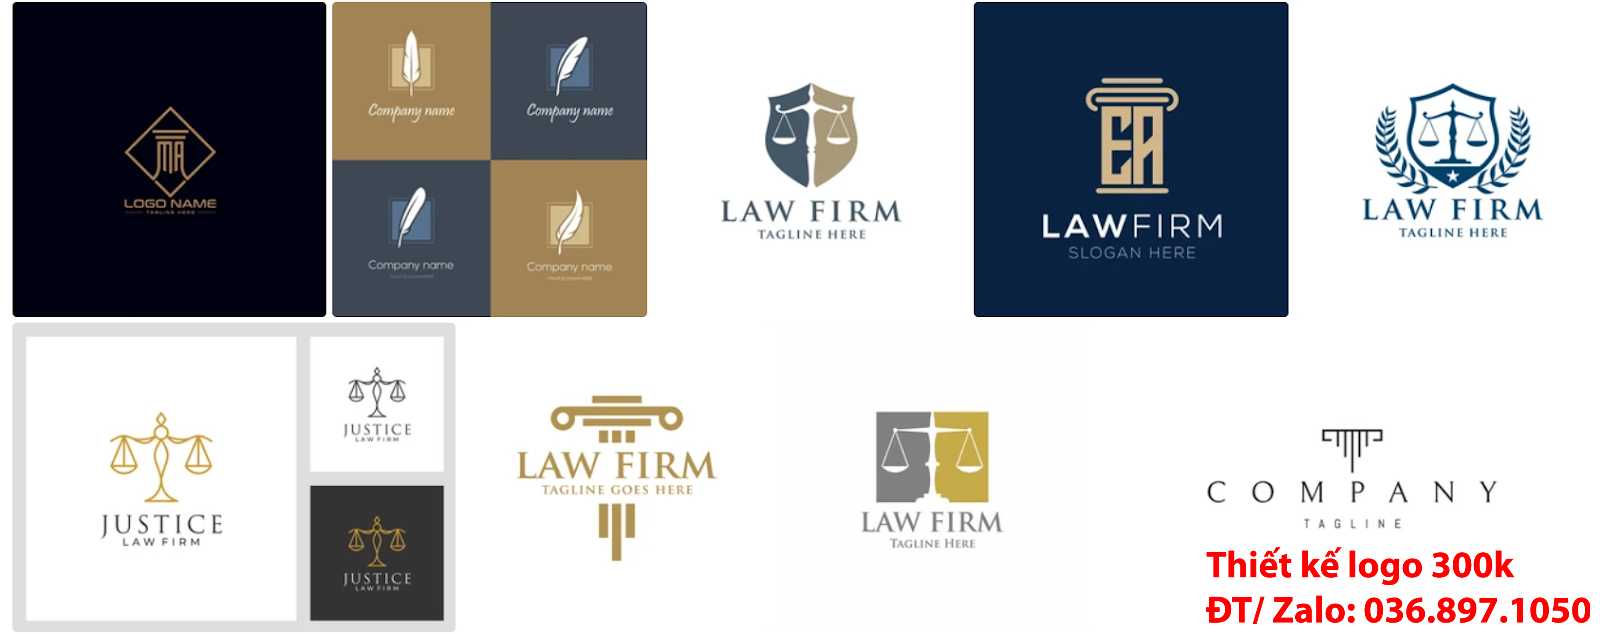 Mẫu logo công ty luật sư đẹp chất lượng từ 300k - 500k